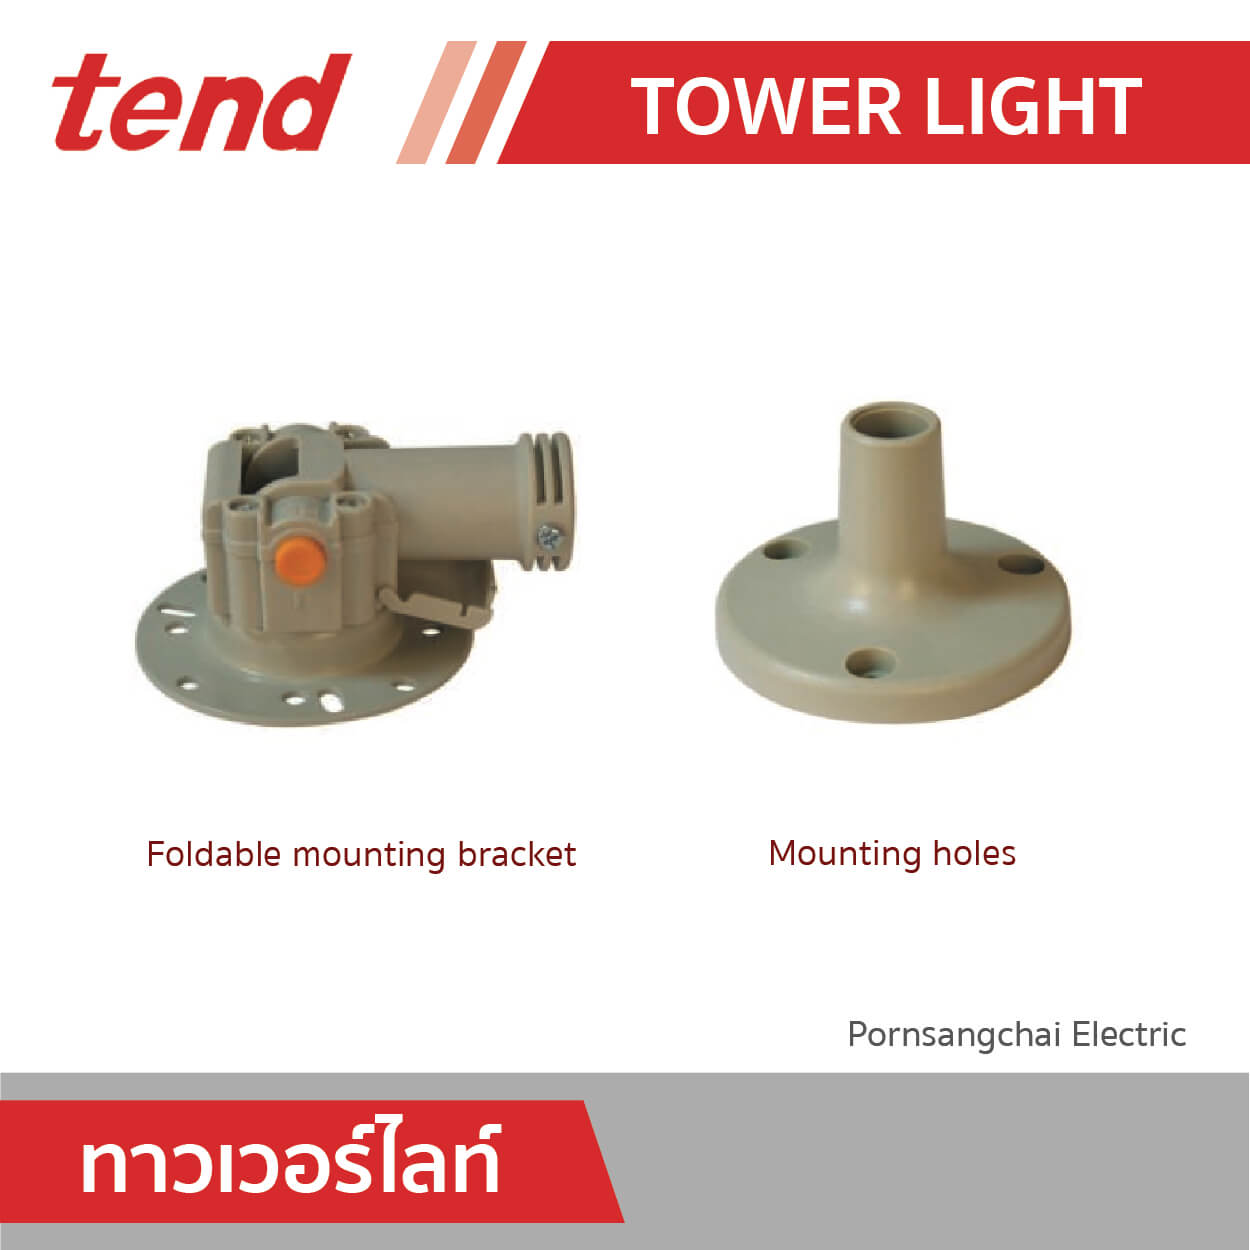 tend Tower Light